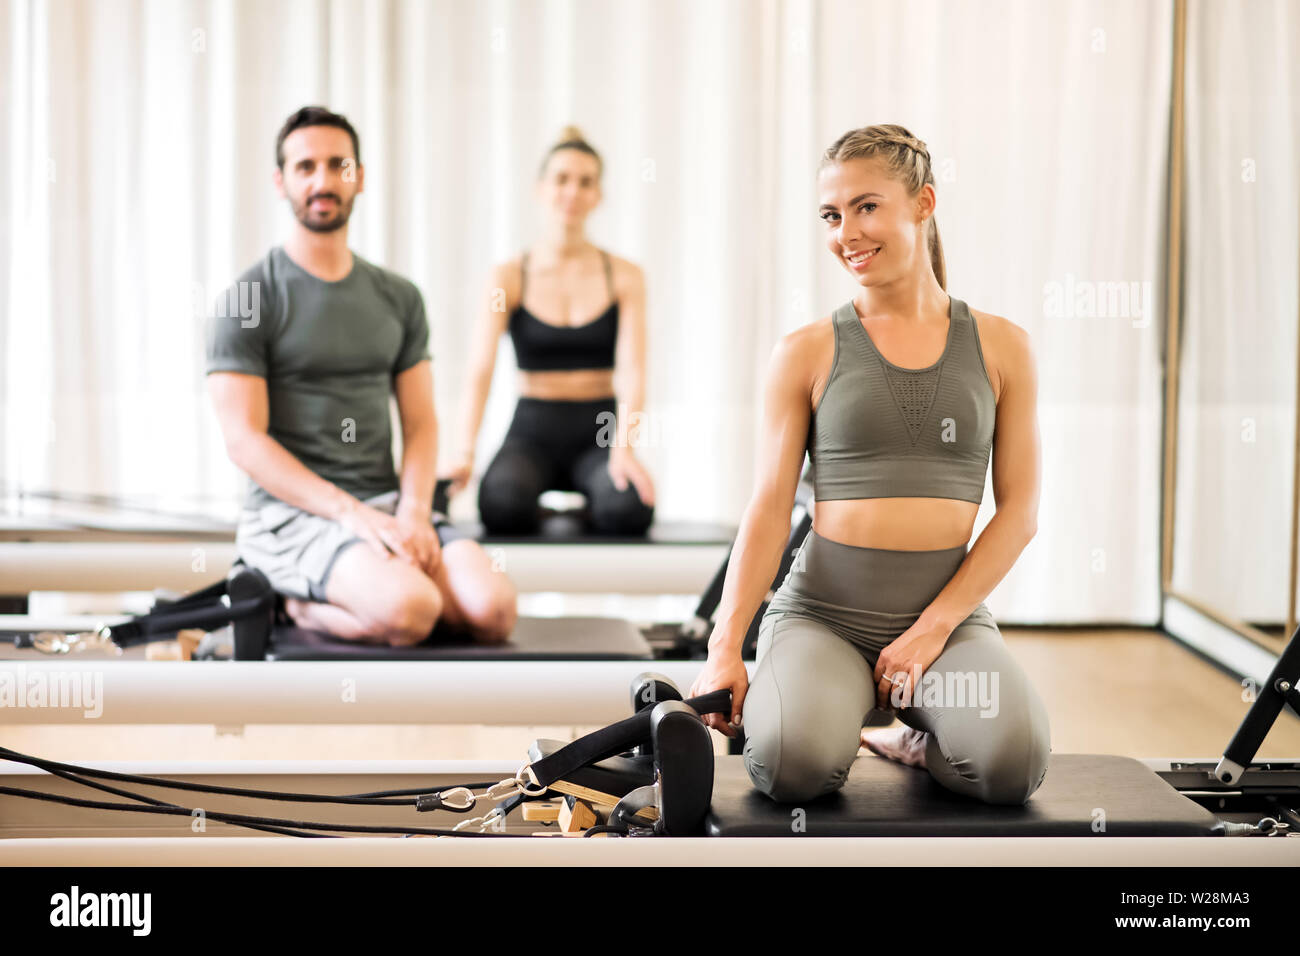 Drei junge Athleten auf Pilates Reformer Betten posiert im Fitnessstudio Stockfoto